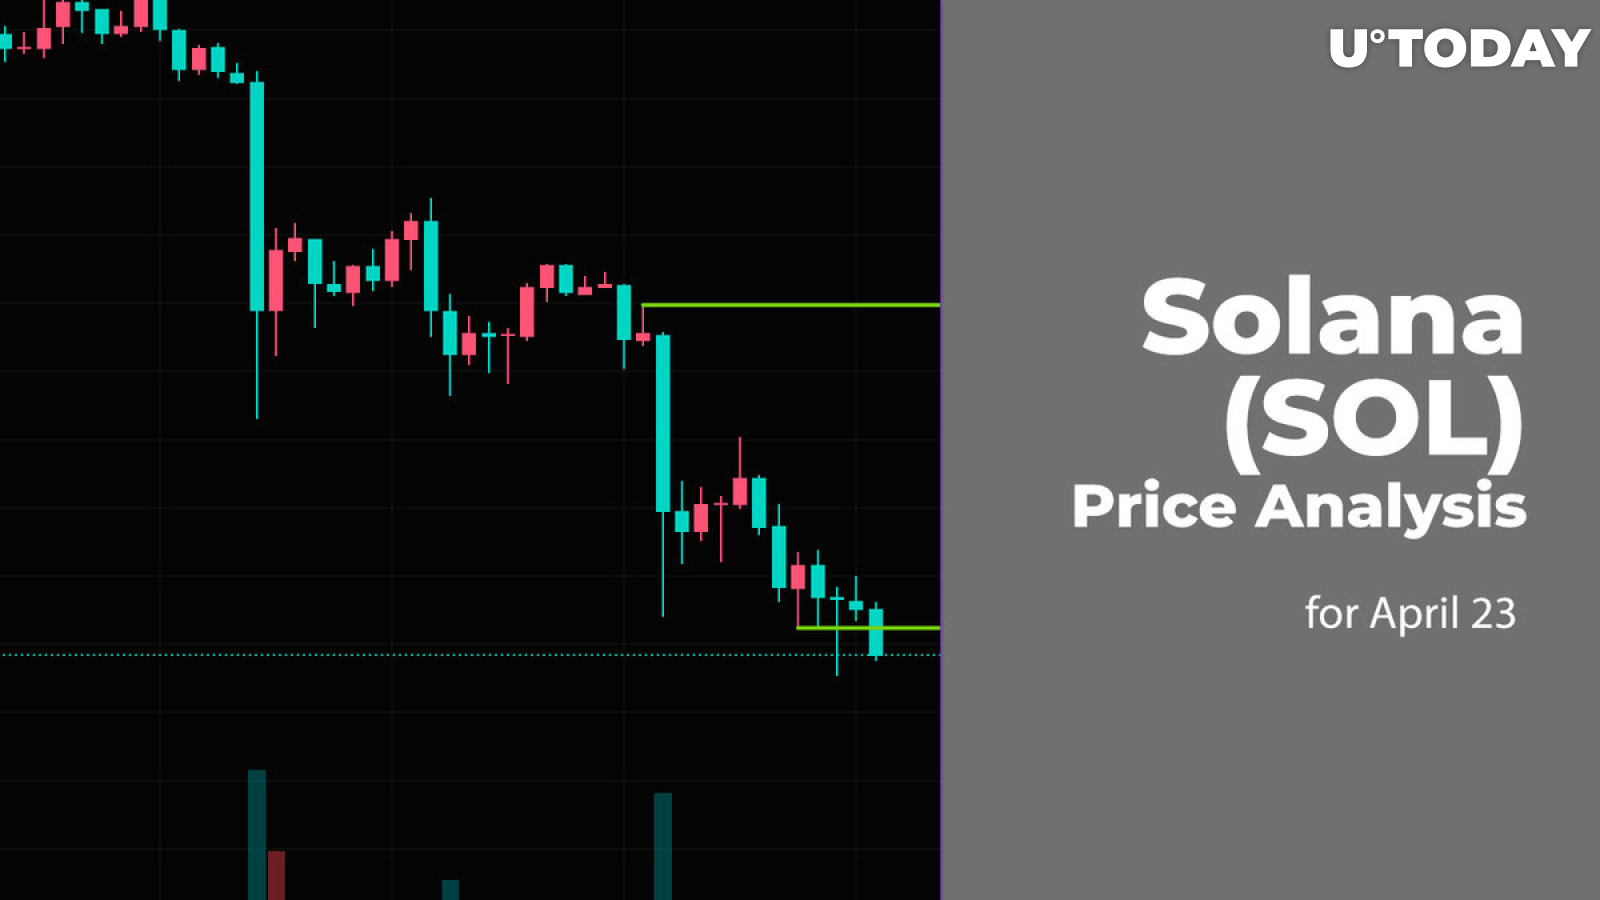 Solana (SOL) Price Prediction for April 23